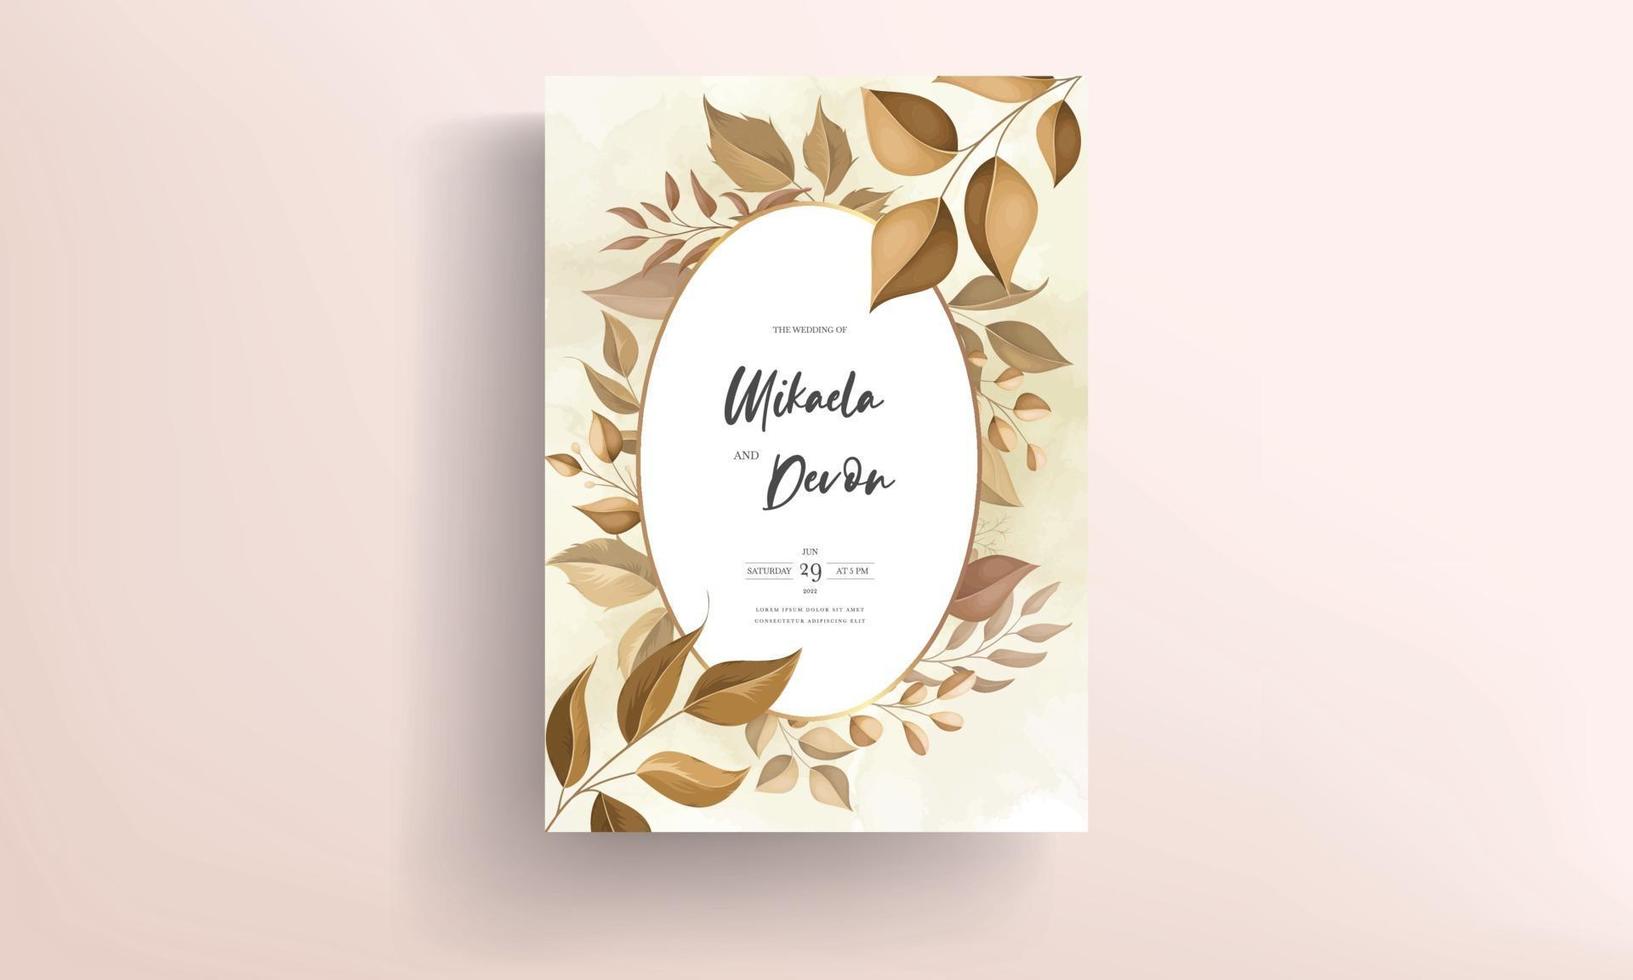 lindo cartão de convite de casamento com decoração de folhas vetor